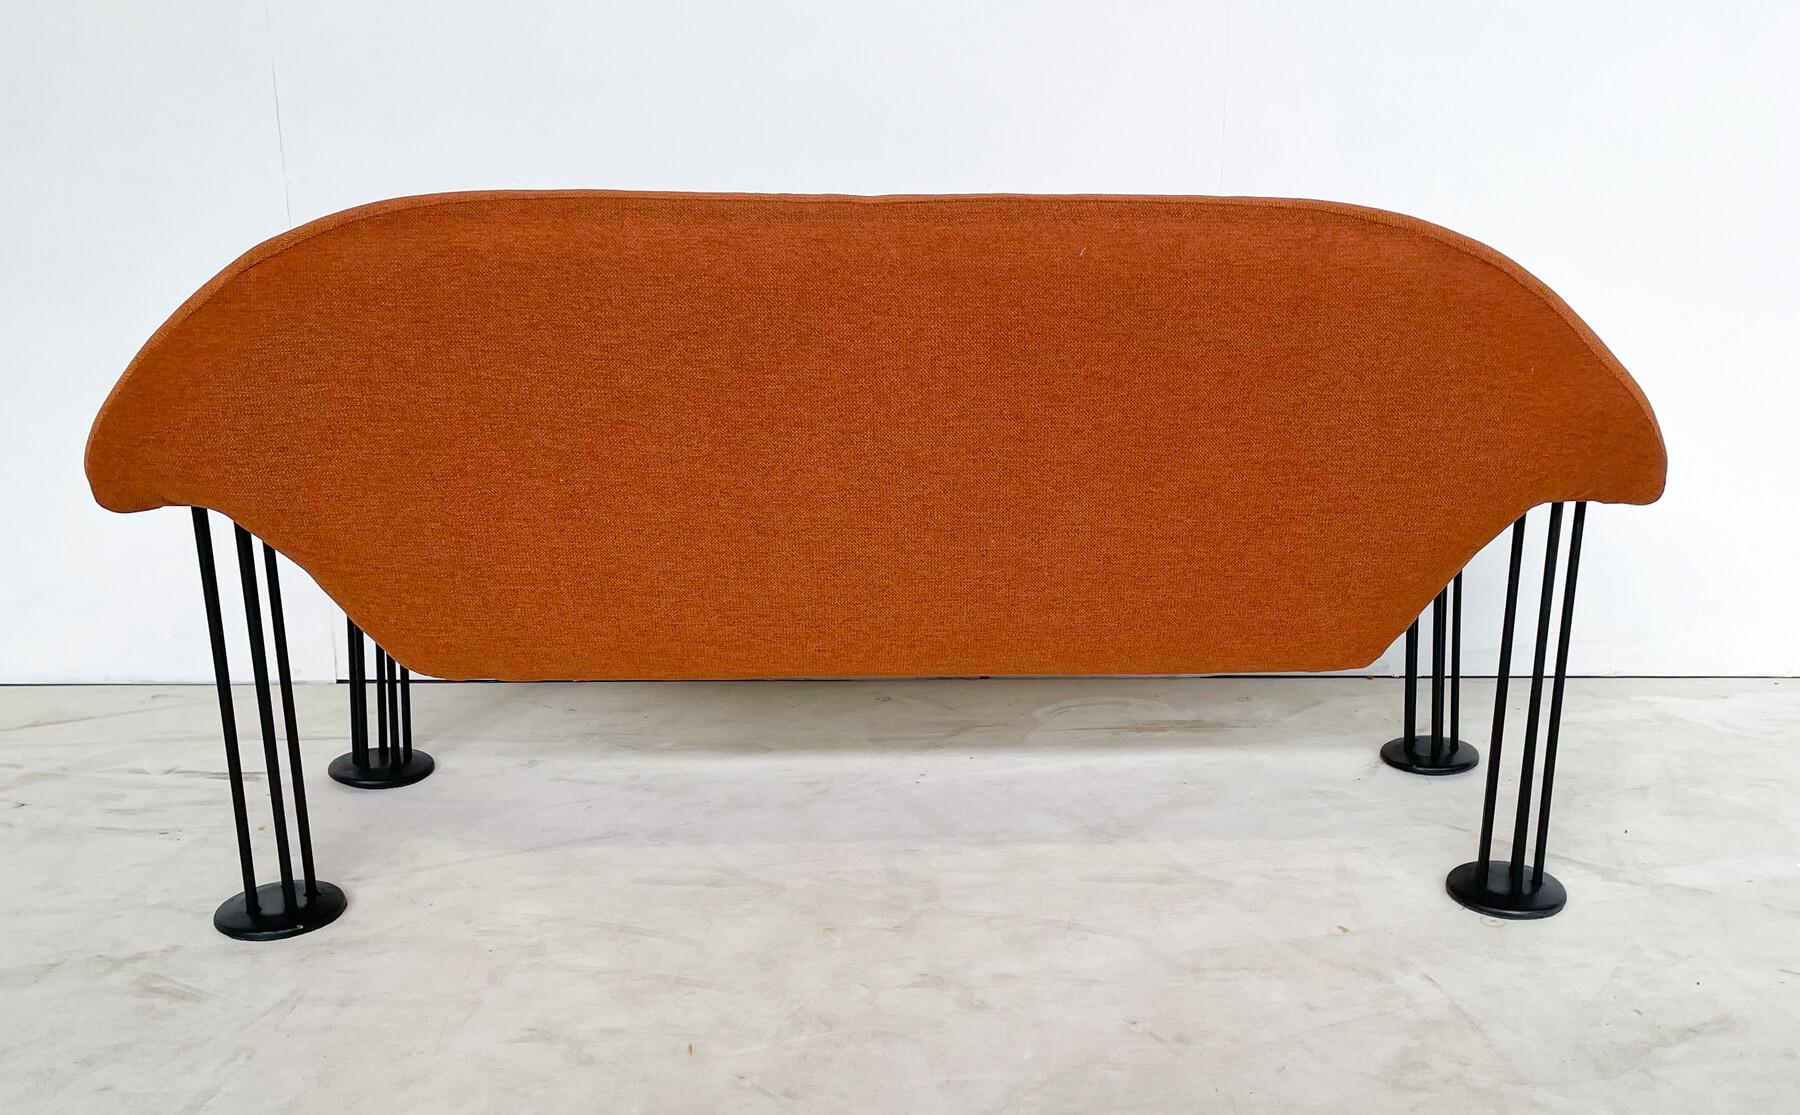 Mid-Century Modern Orange Sofa von Burkhard Vogtherr für Hain + Tohme, Stoff, 1980er Jahre - New Polsterung.